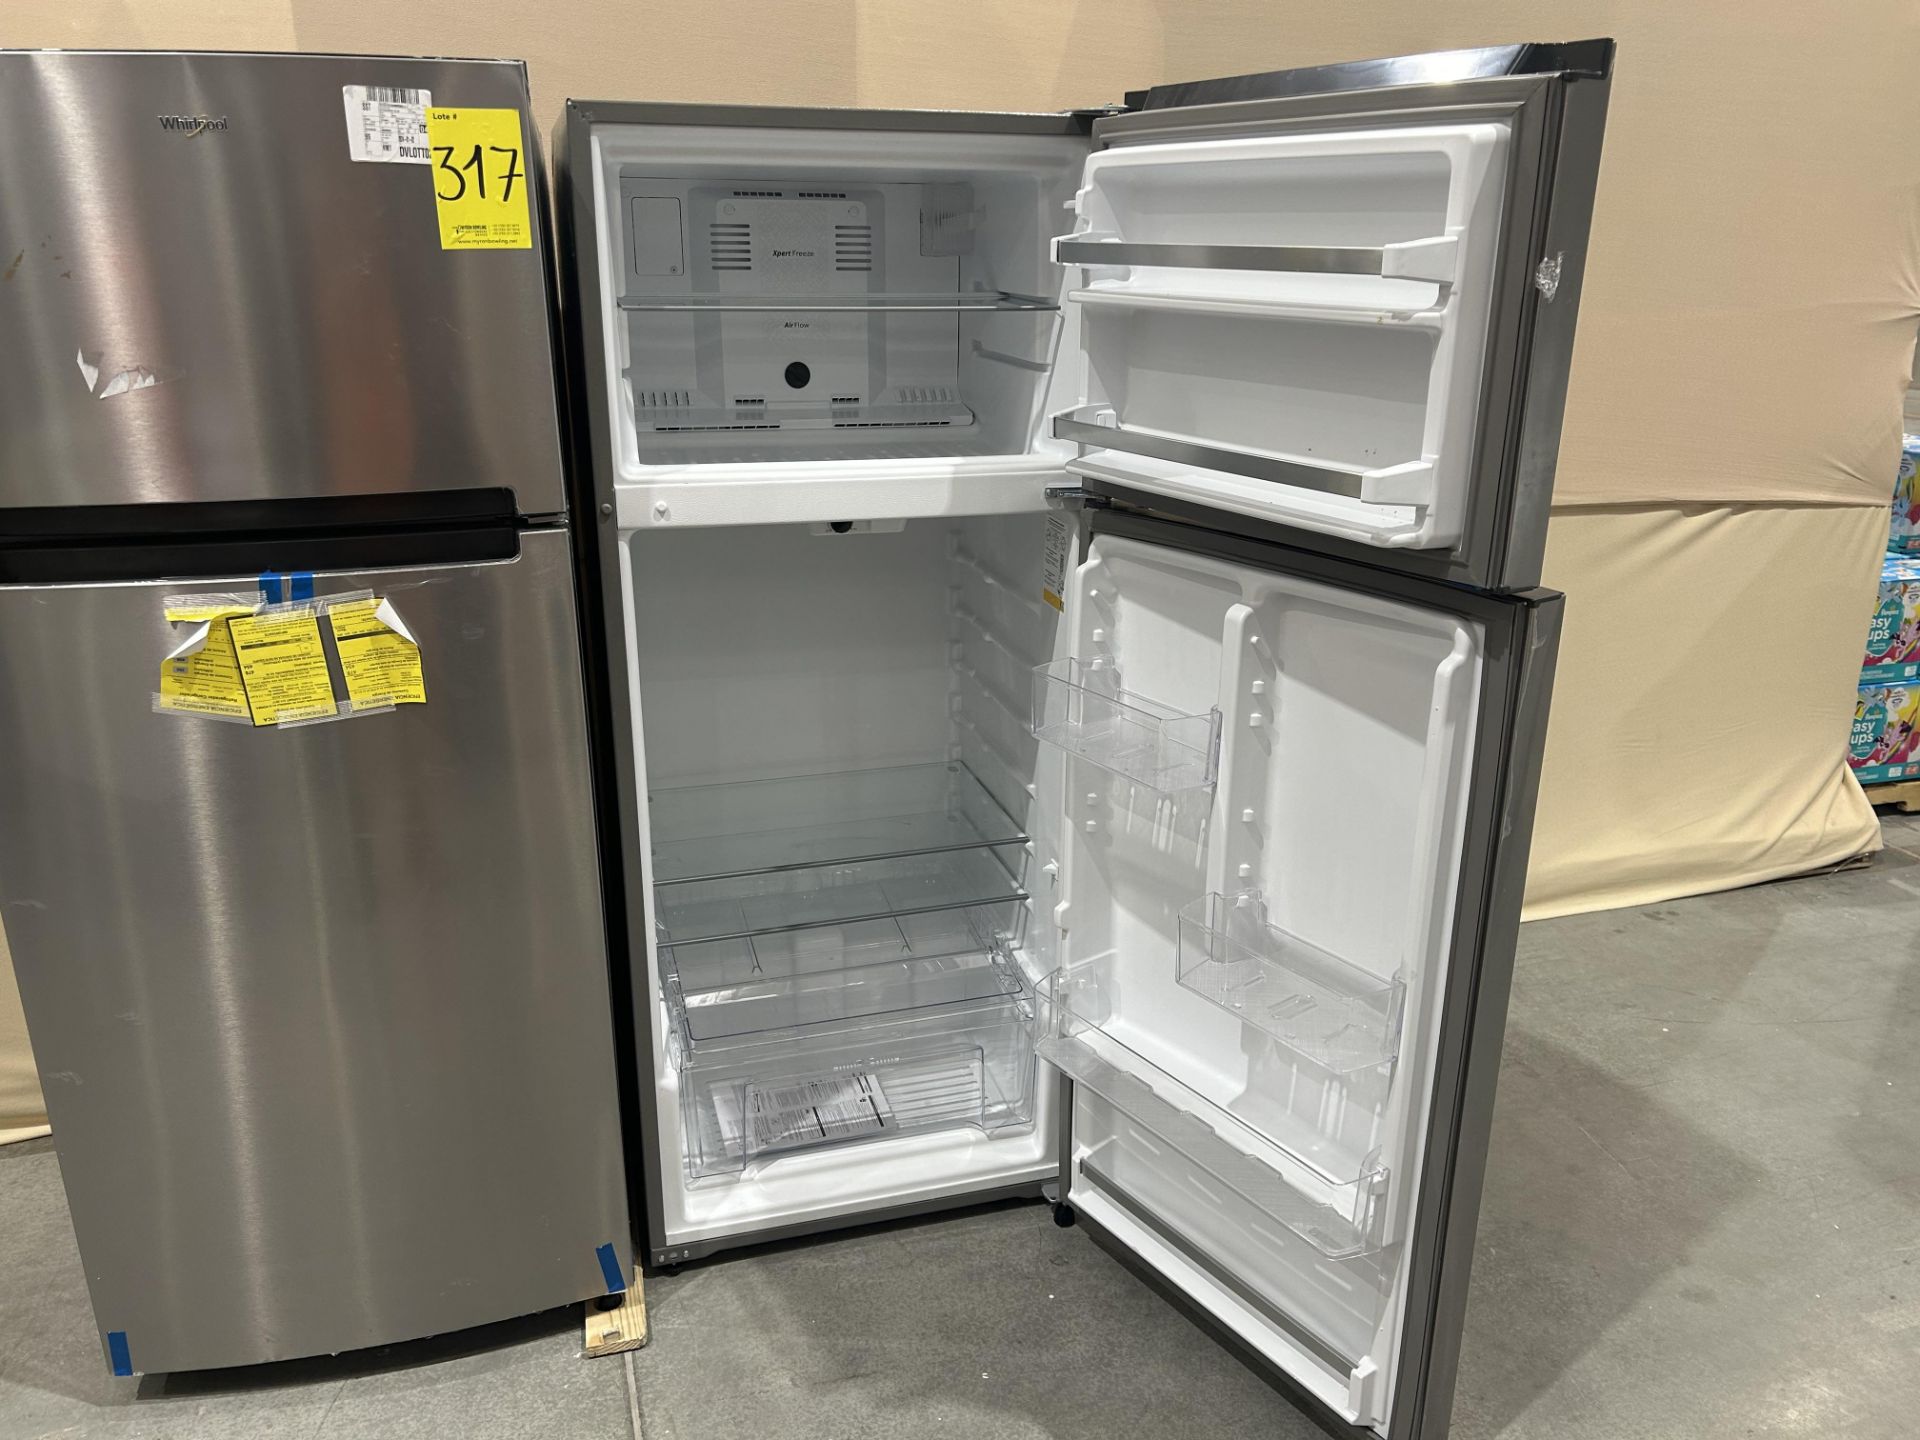 Lote de 2 refrigeradores contiene: 1 refrigerador Marca WHIRLPOOL, Modelo WT1818A, Serie 535500, Co - Image 5 of 6